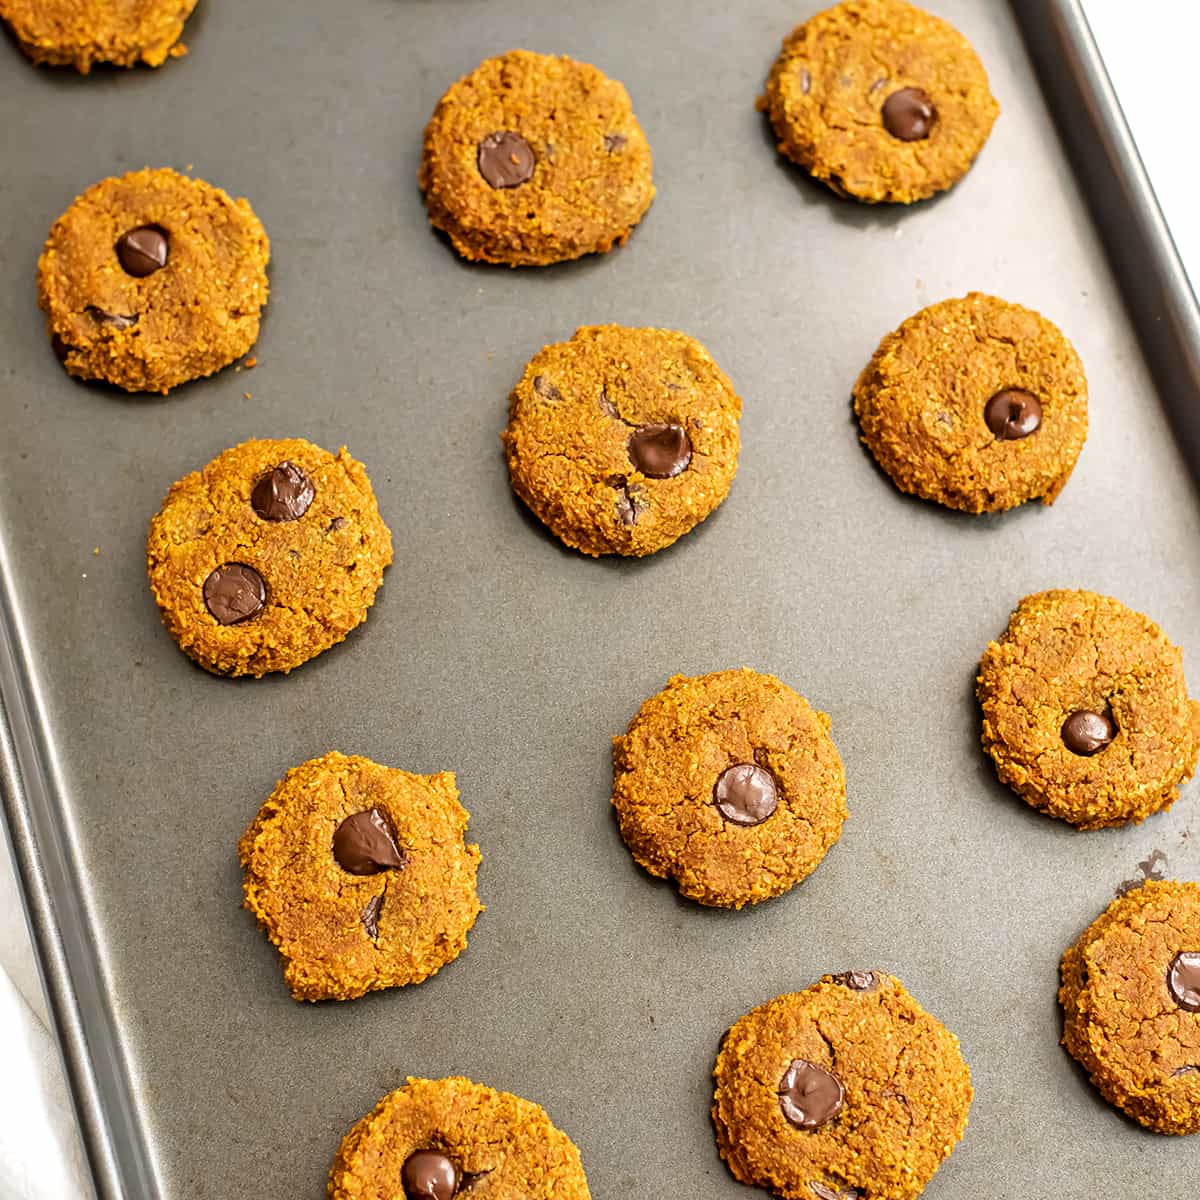 Gluten free pumpkin chocolate chip cookies on a baking sheet.